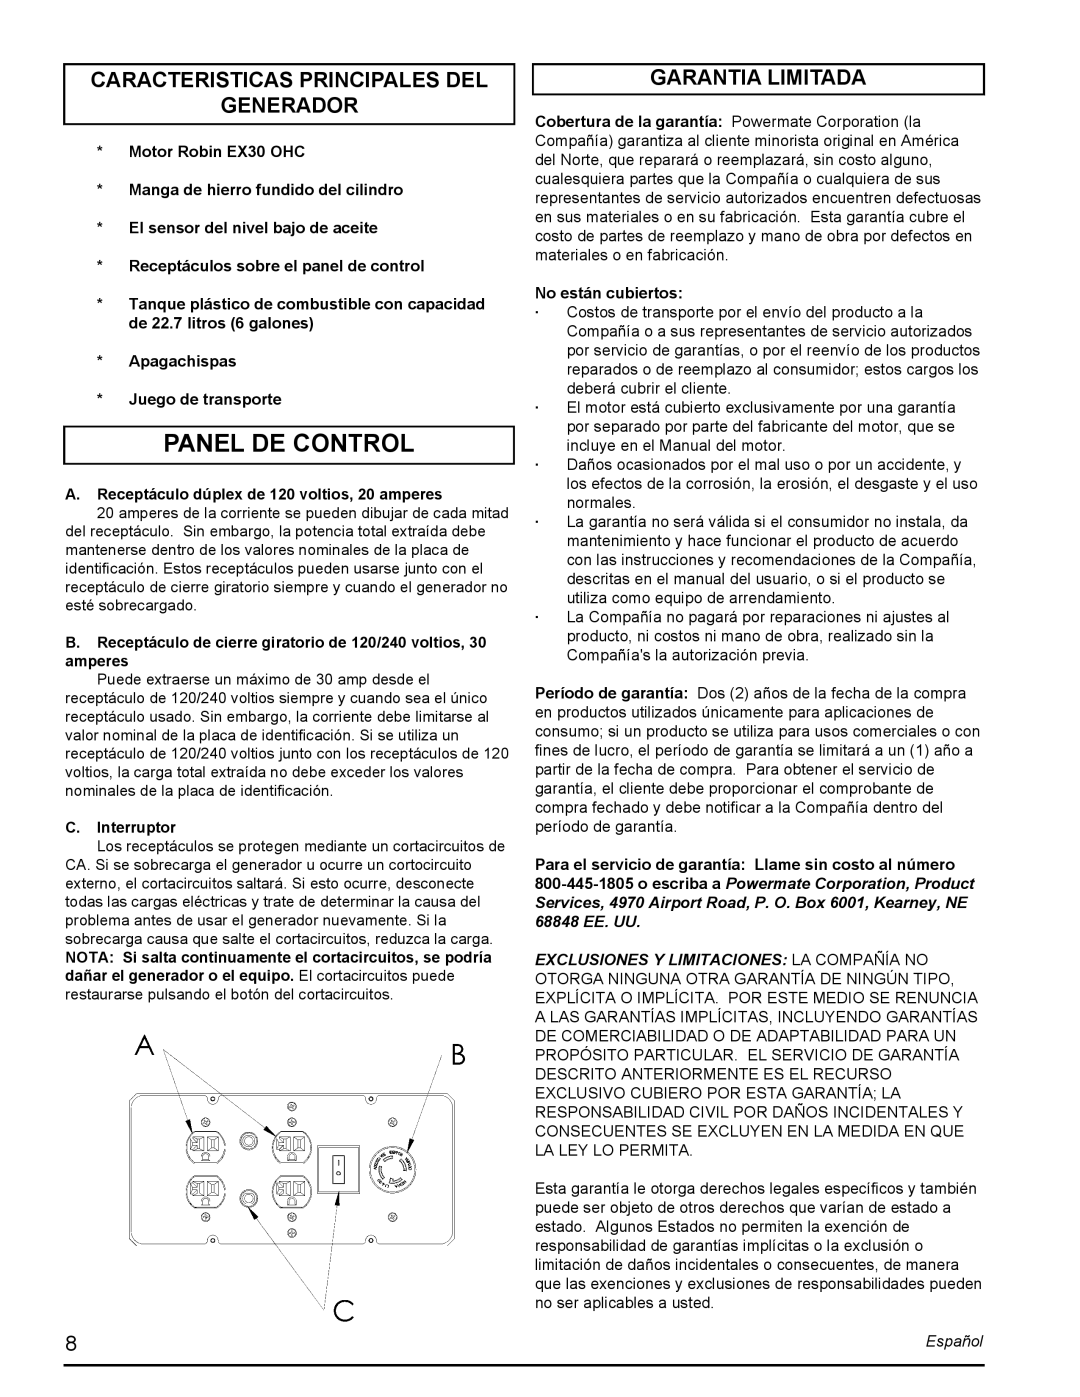 Powermate PMC435251 manual Panel De Control, Caracteristicas Principales Del Generador, Garantia Limitada, Español 